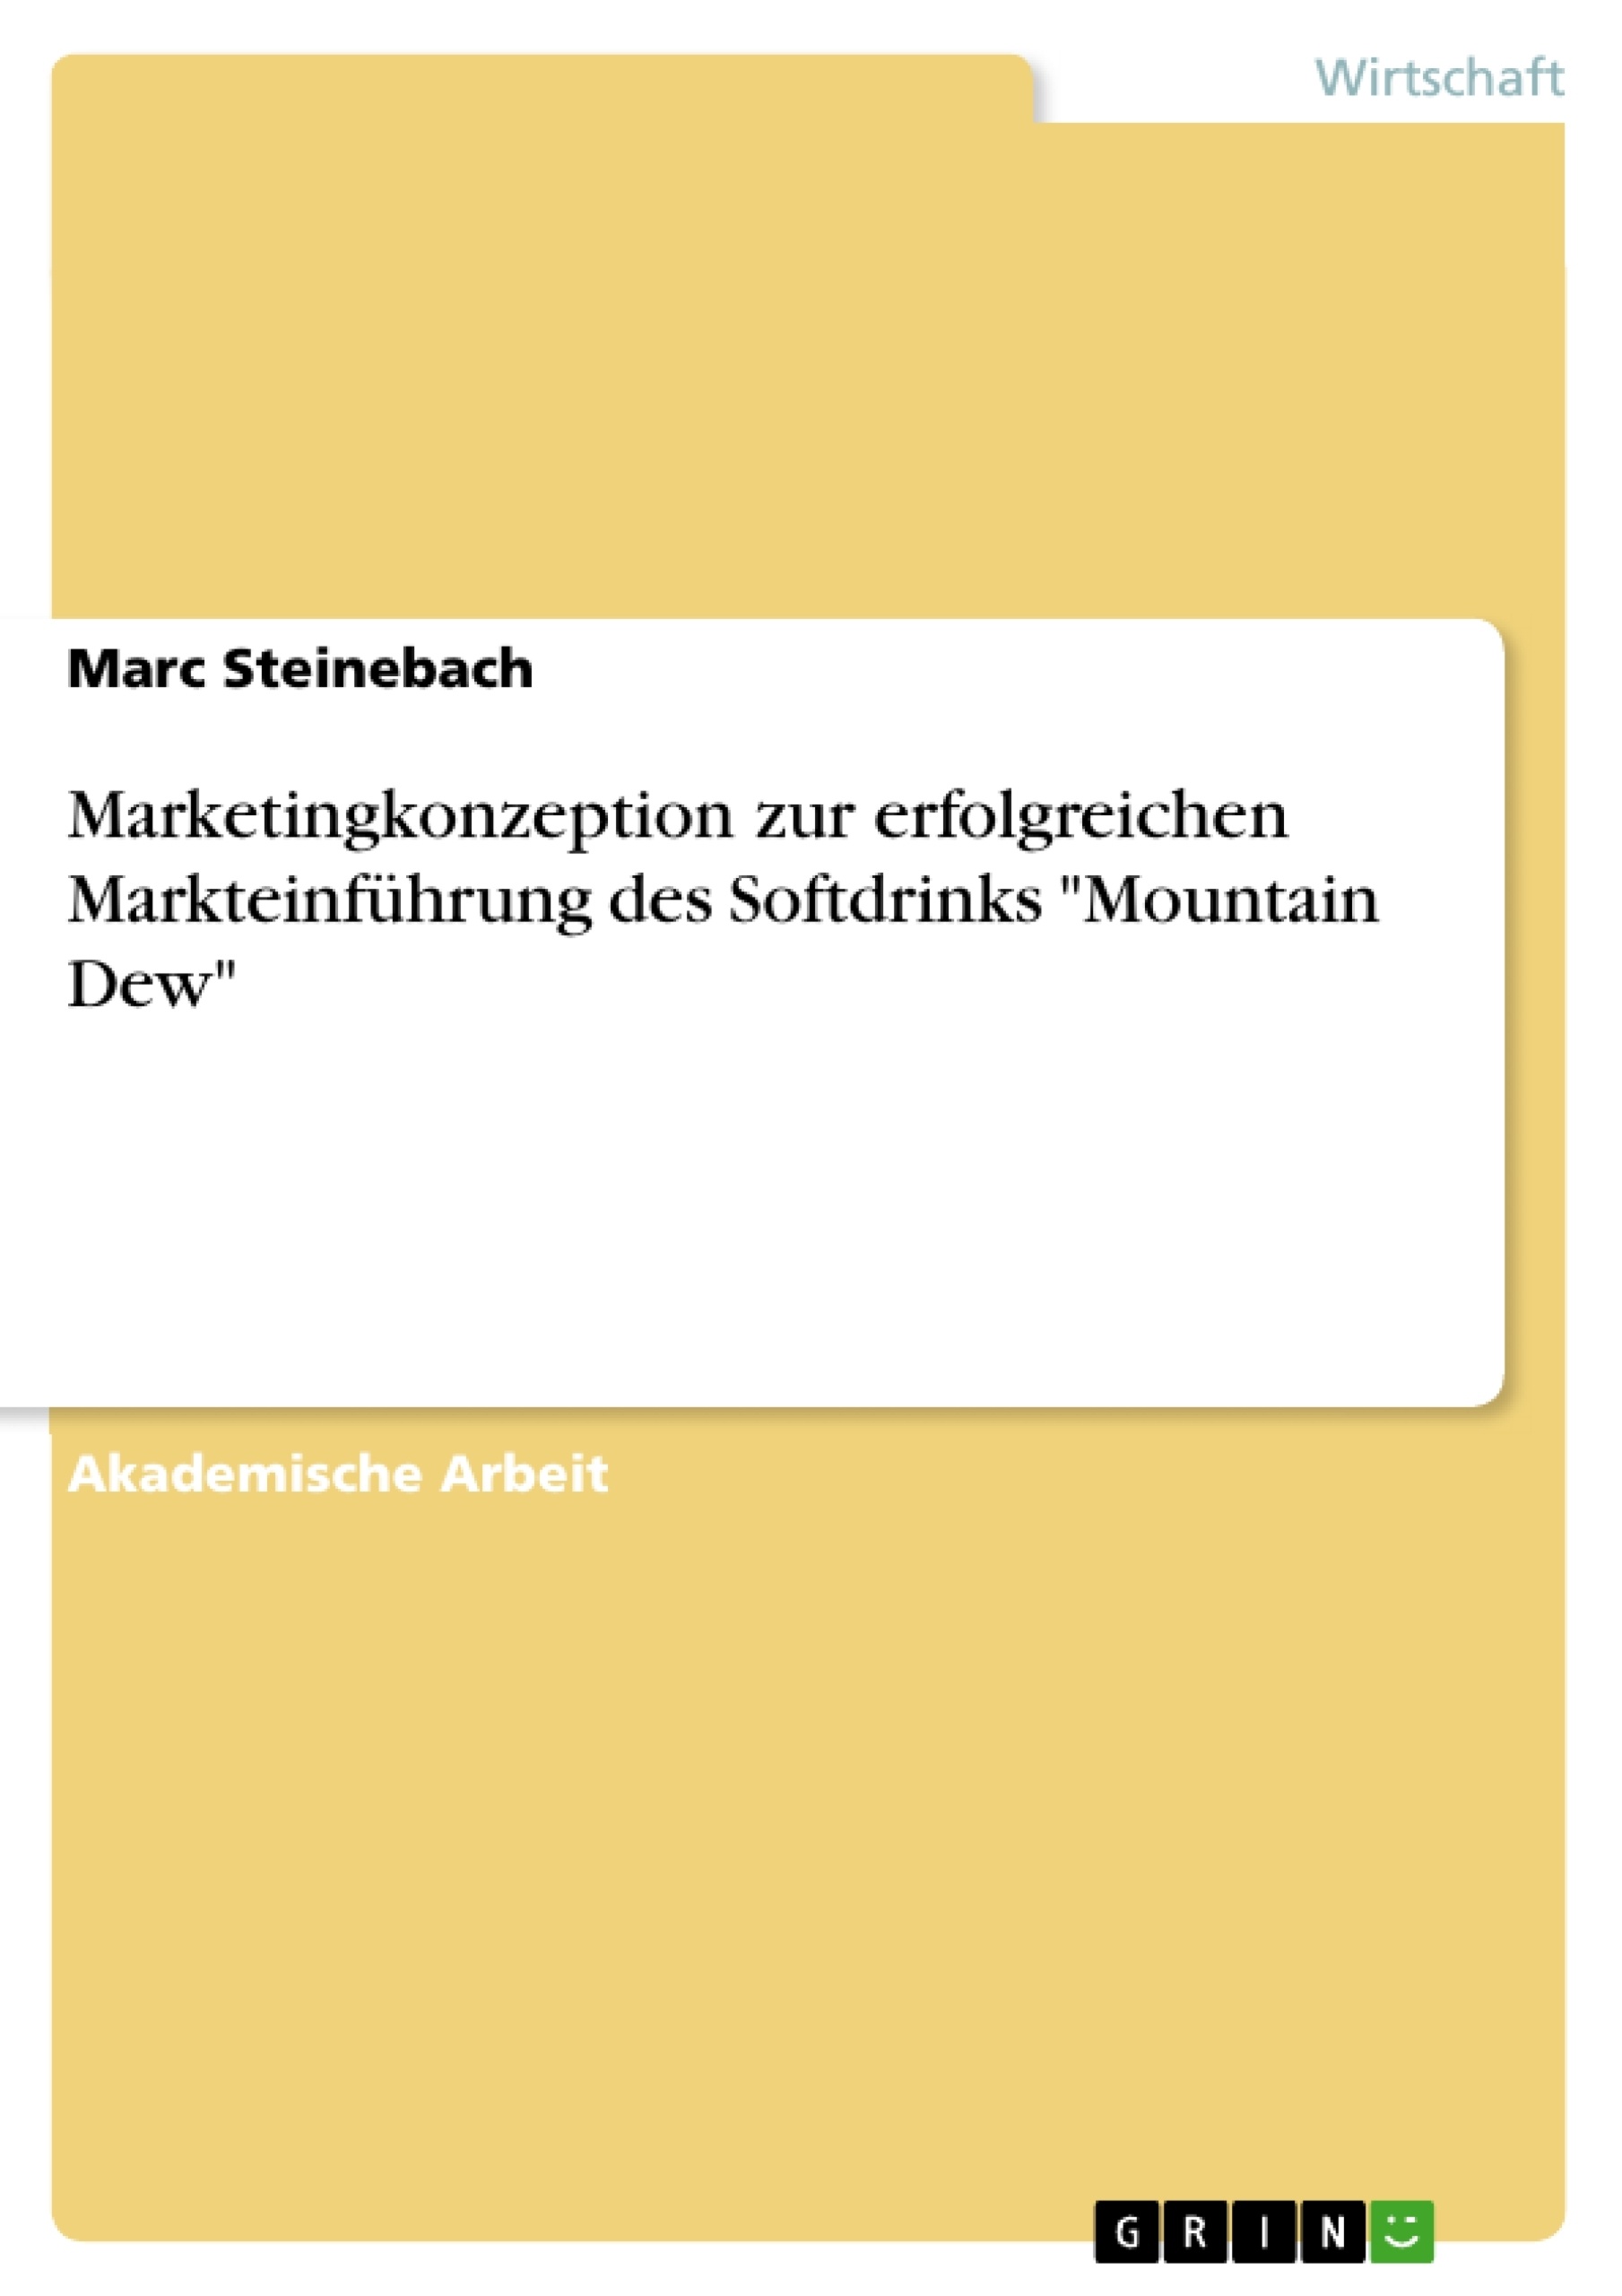 Title: Marketingkonzeption zur erfolgreichen Markteinführung des Softdrinks "Mountain Dew"